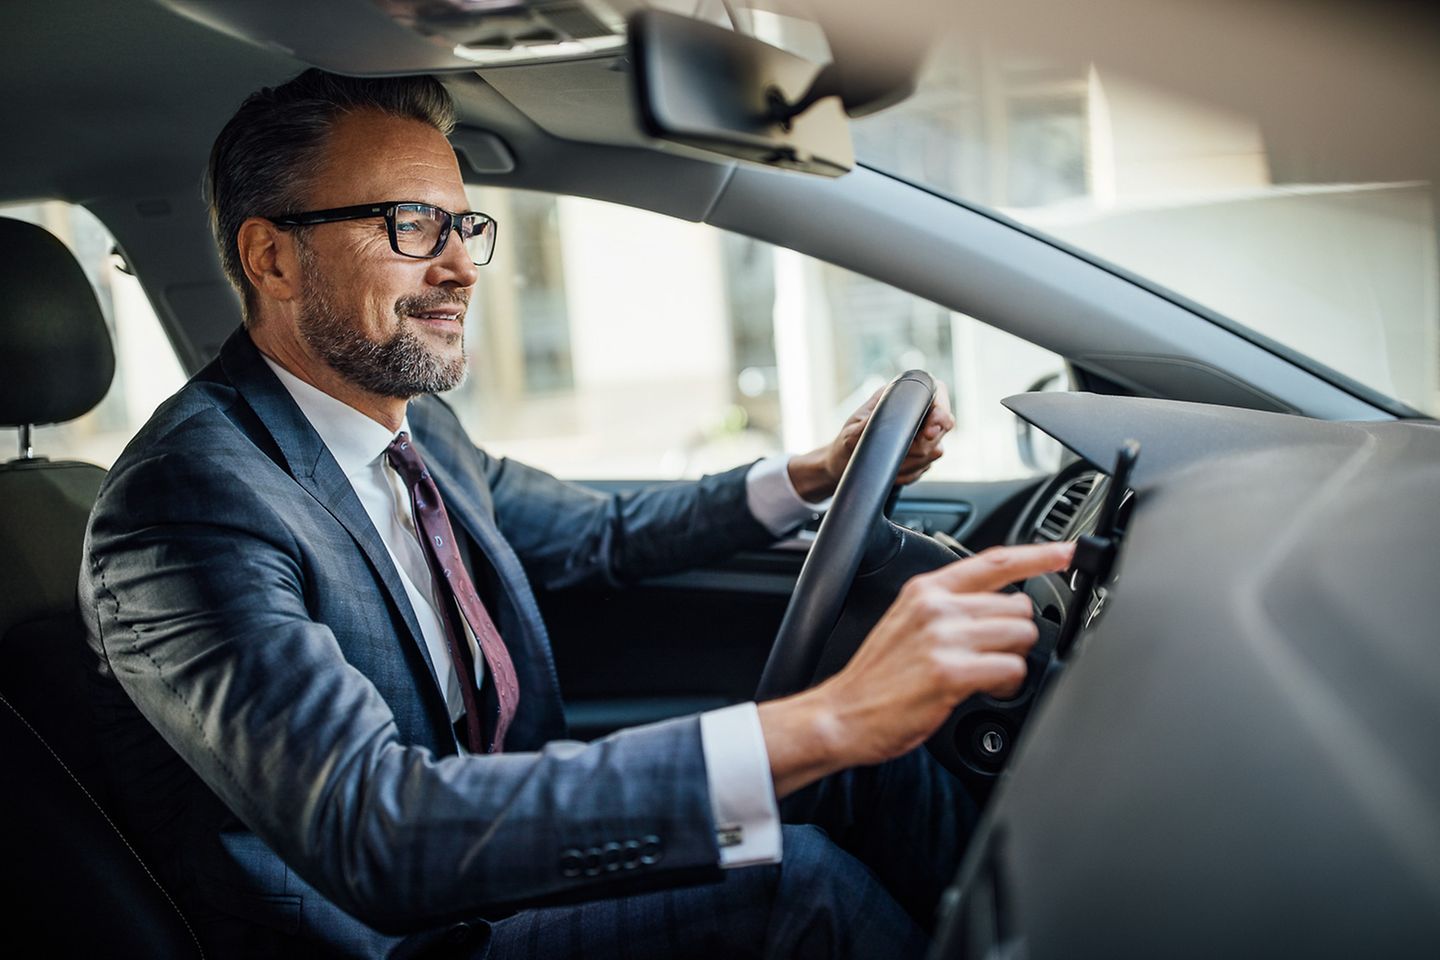  Un homme est assis au volant d’une voiture et utilise son smartphone, fixé au tableau de bord, avec sa main droite.